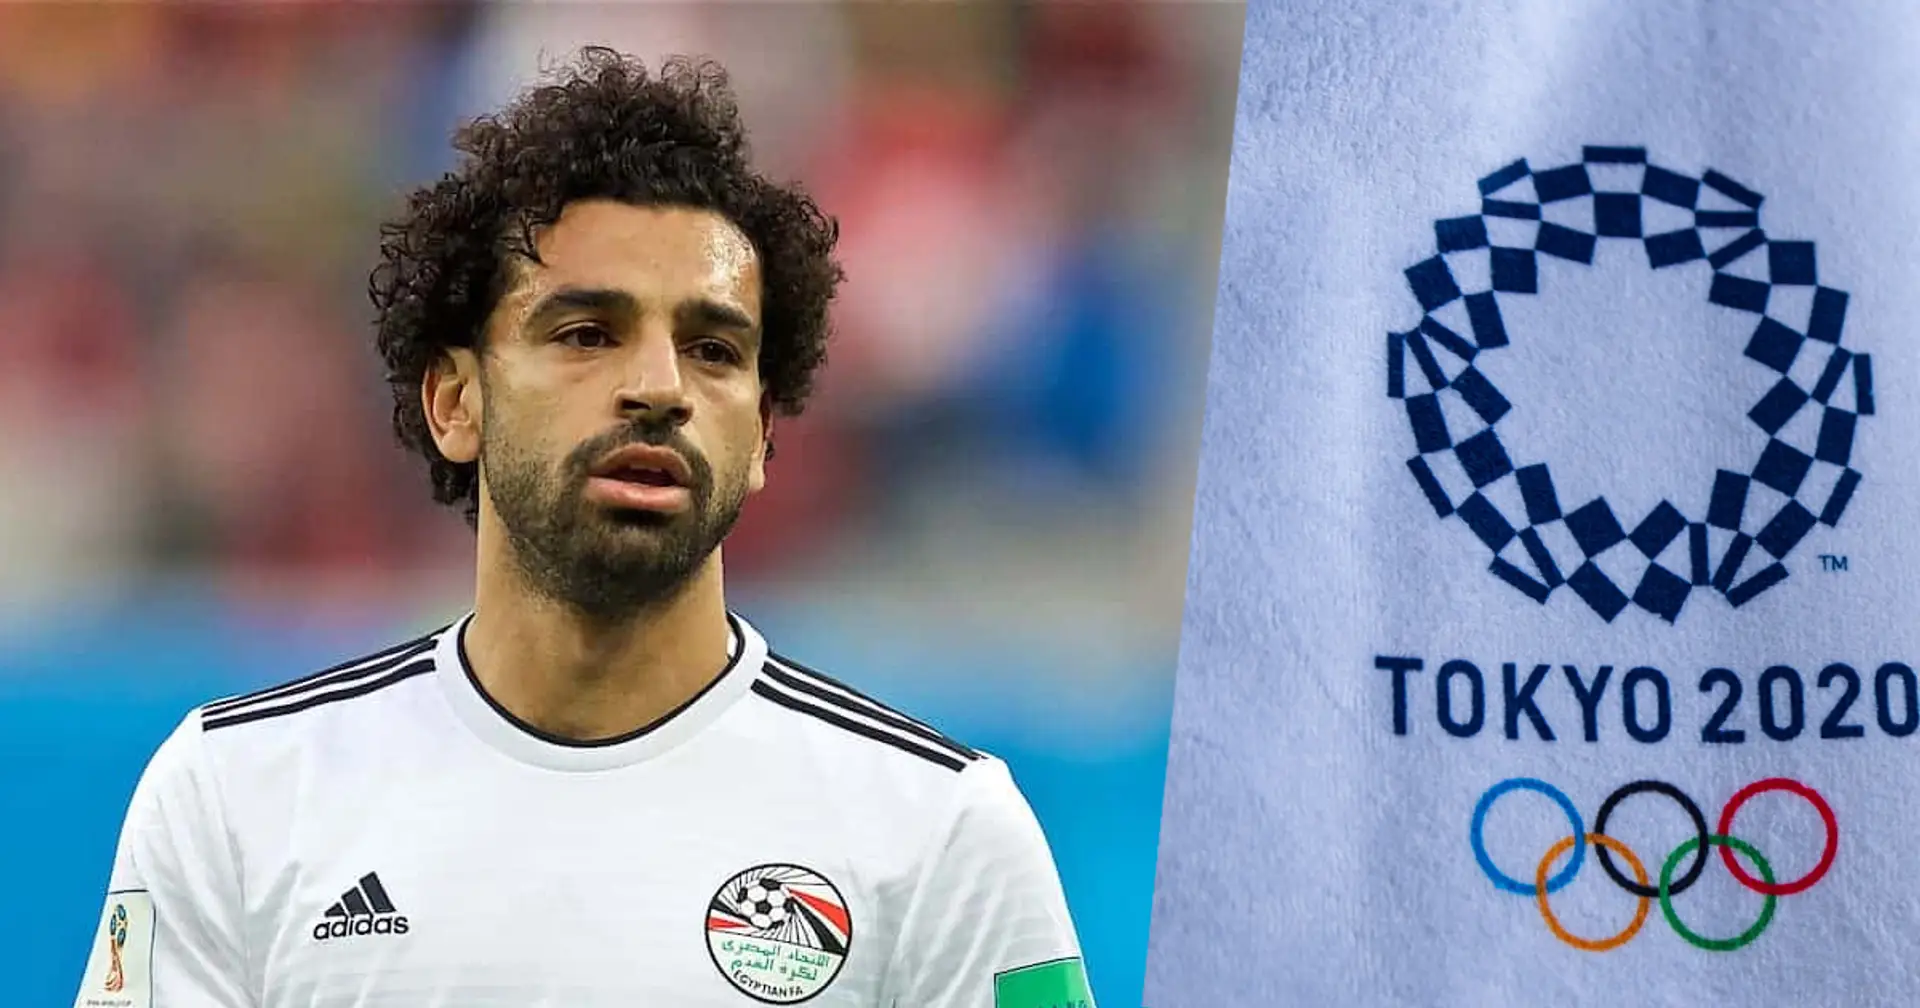 Egypt boss makes claim on Liverpool forbidding Salah play at Olympics